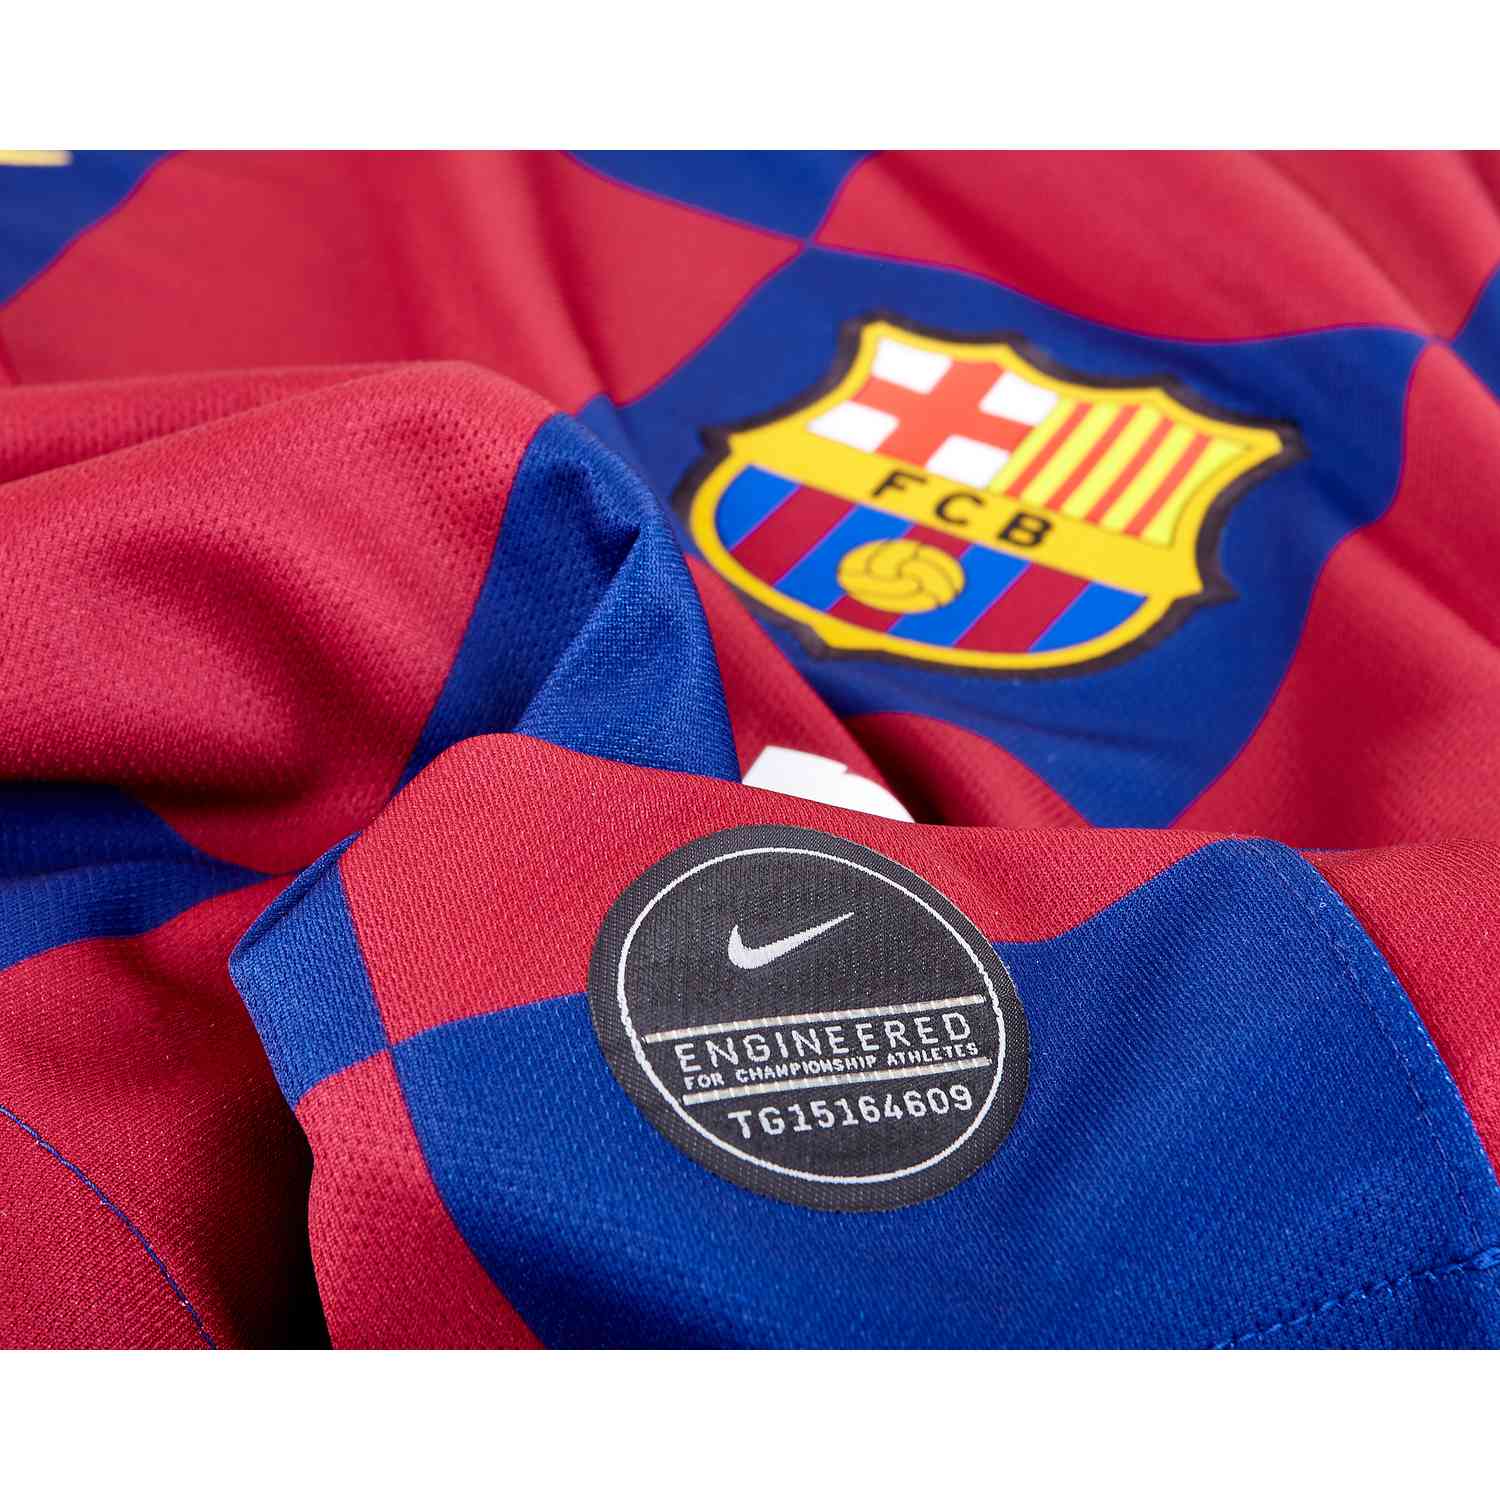 2019/20 Nike Barcelona L/S Home Jersey - SoccerPro